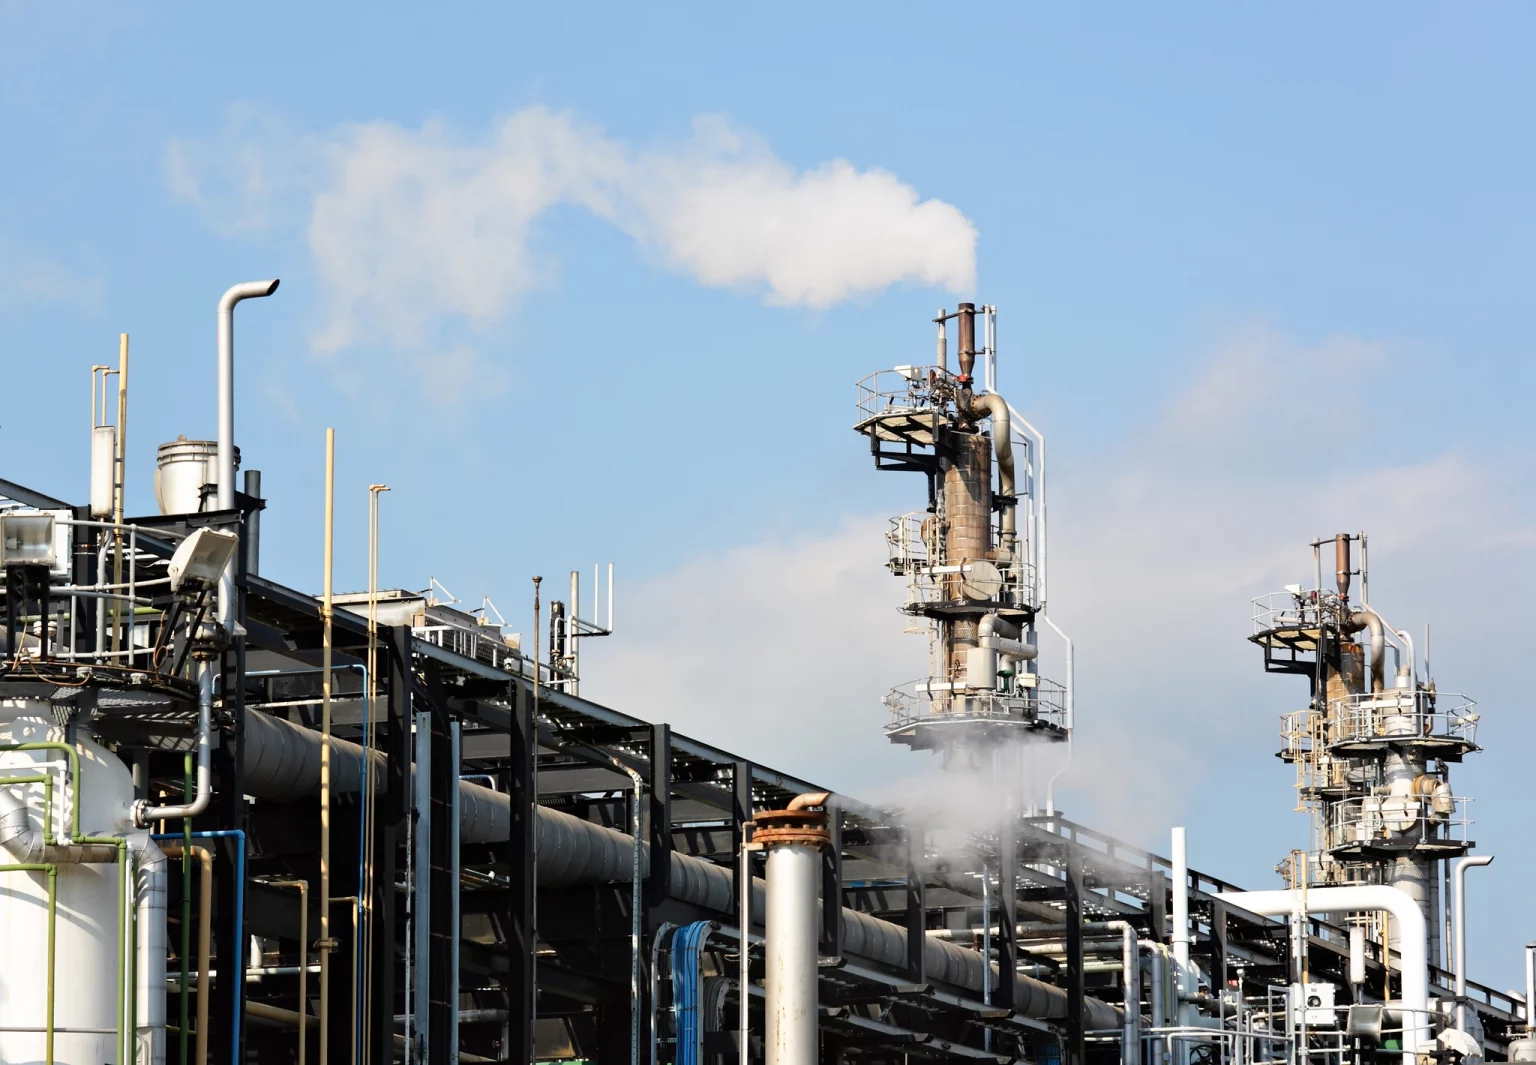 Installations industrielles du secteur de l'énergie avec des tuyauteries et des colonnes de distillation émettant de la vapeur, symbolisant l'industrie du gaz et de la pétrochimie.